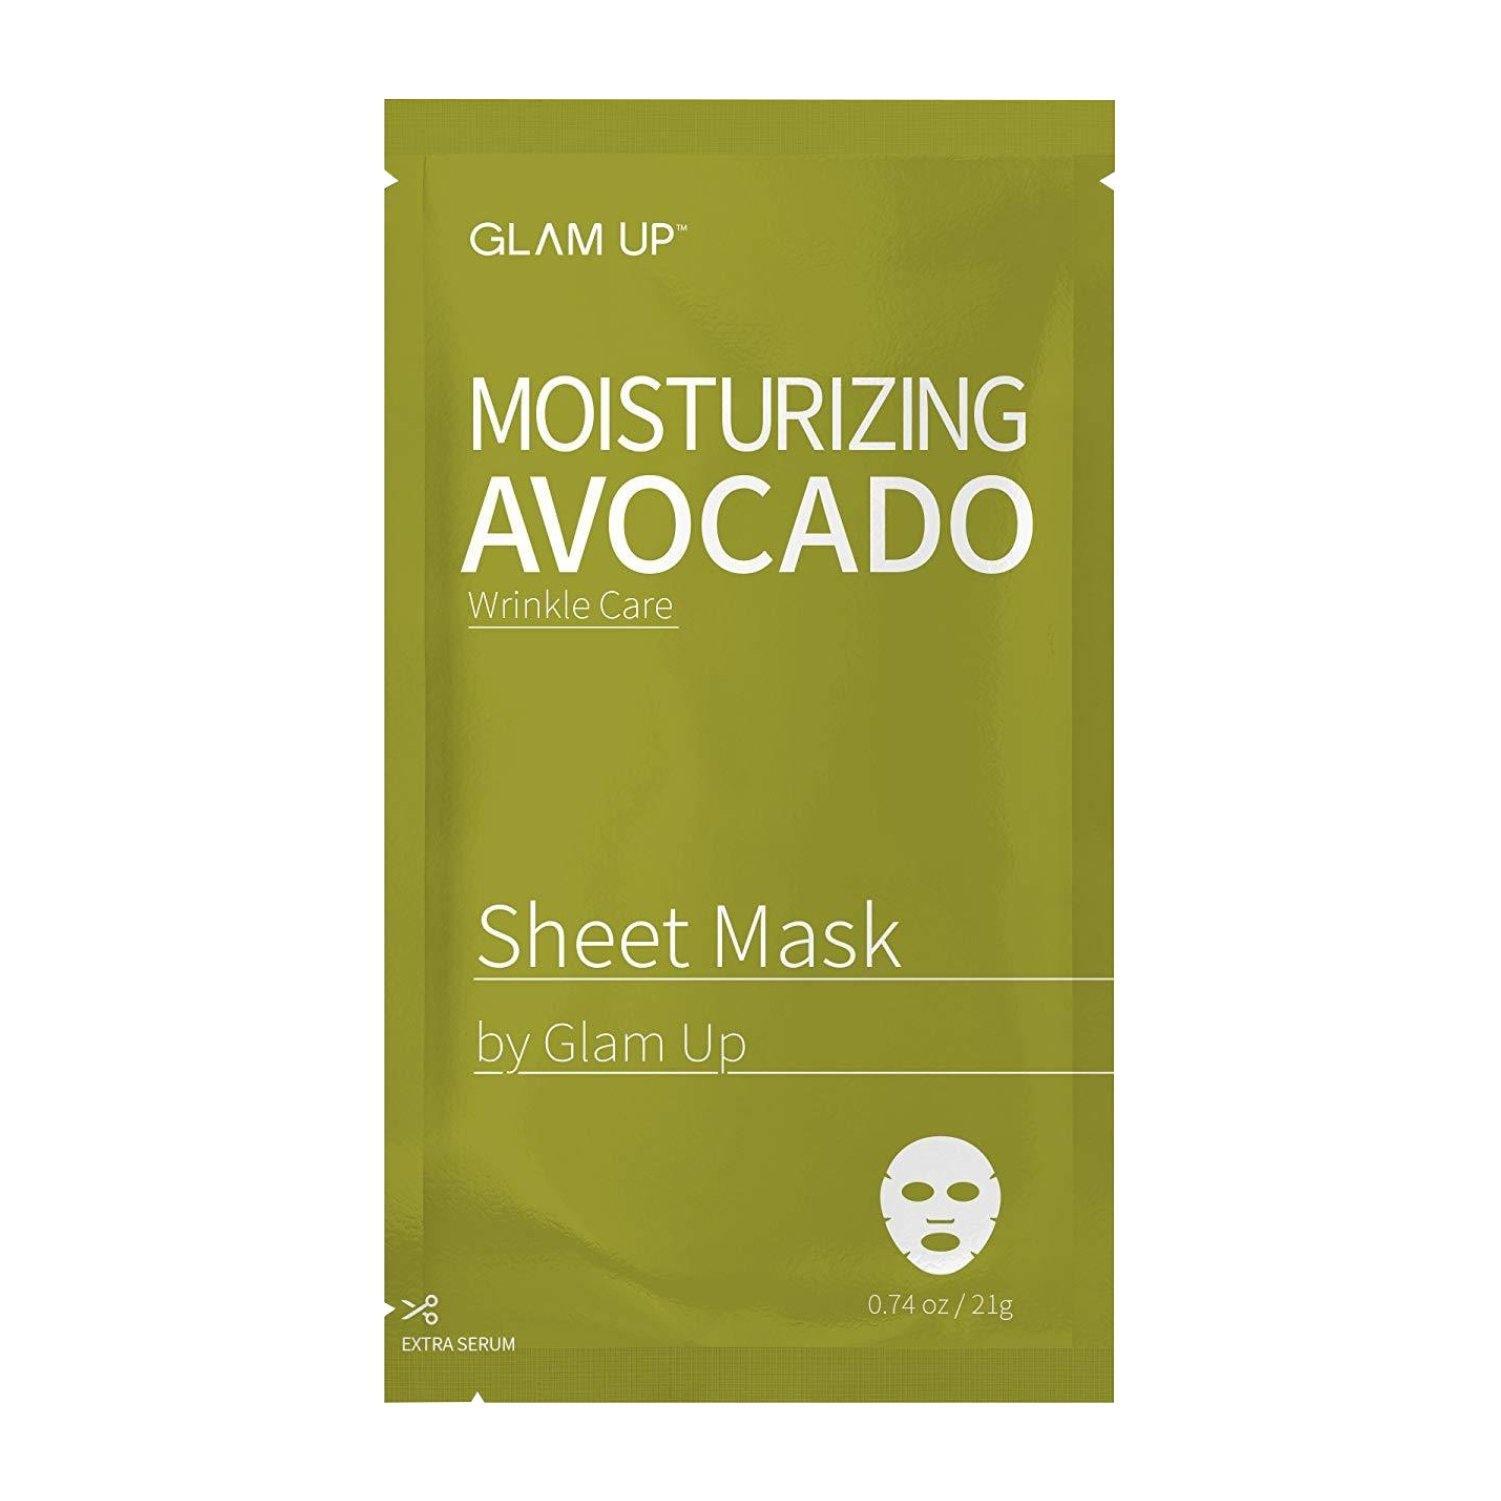 Moisturizing Avocado Sheet Mask